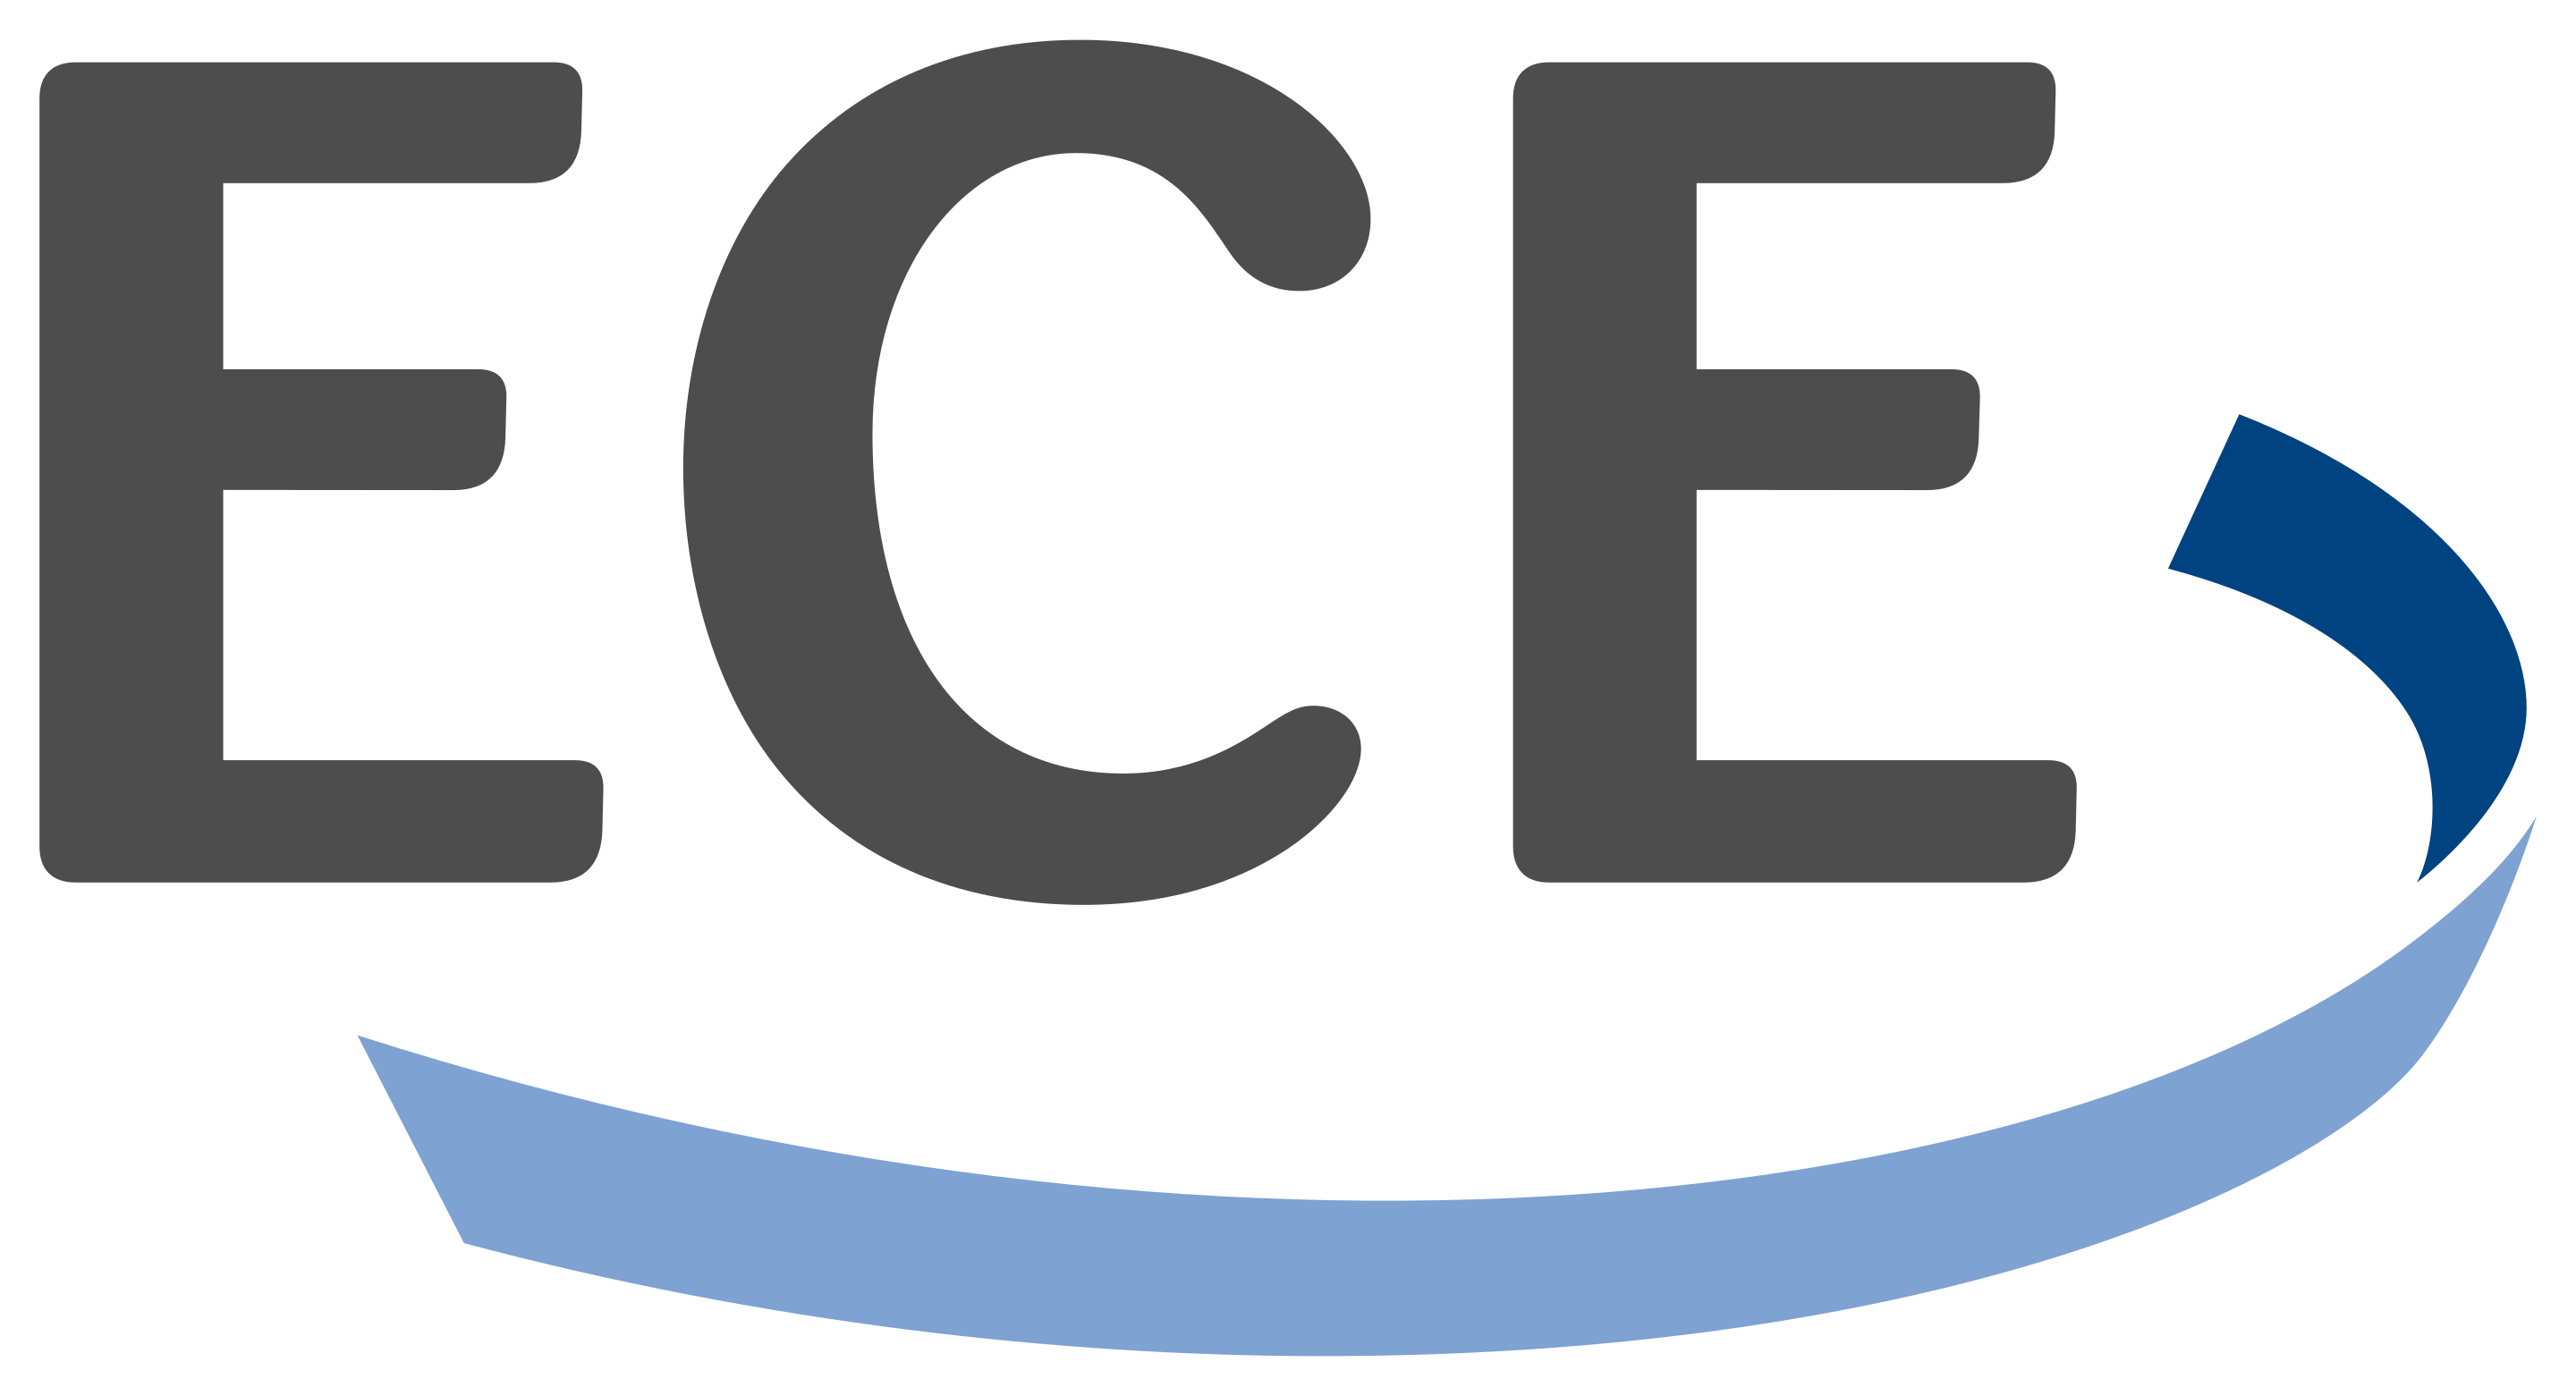 ECE Group Services GmbH & Co. KG